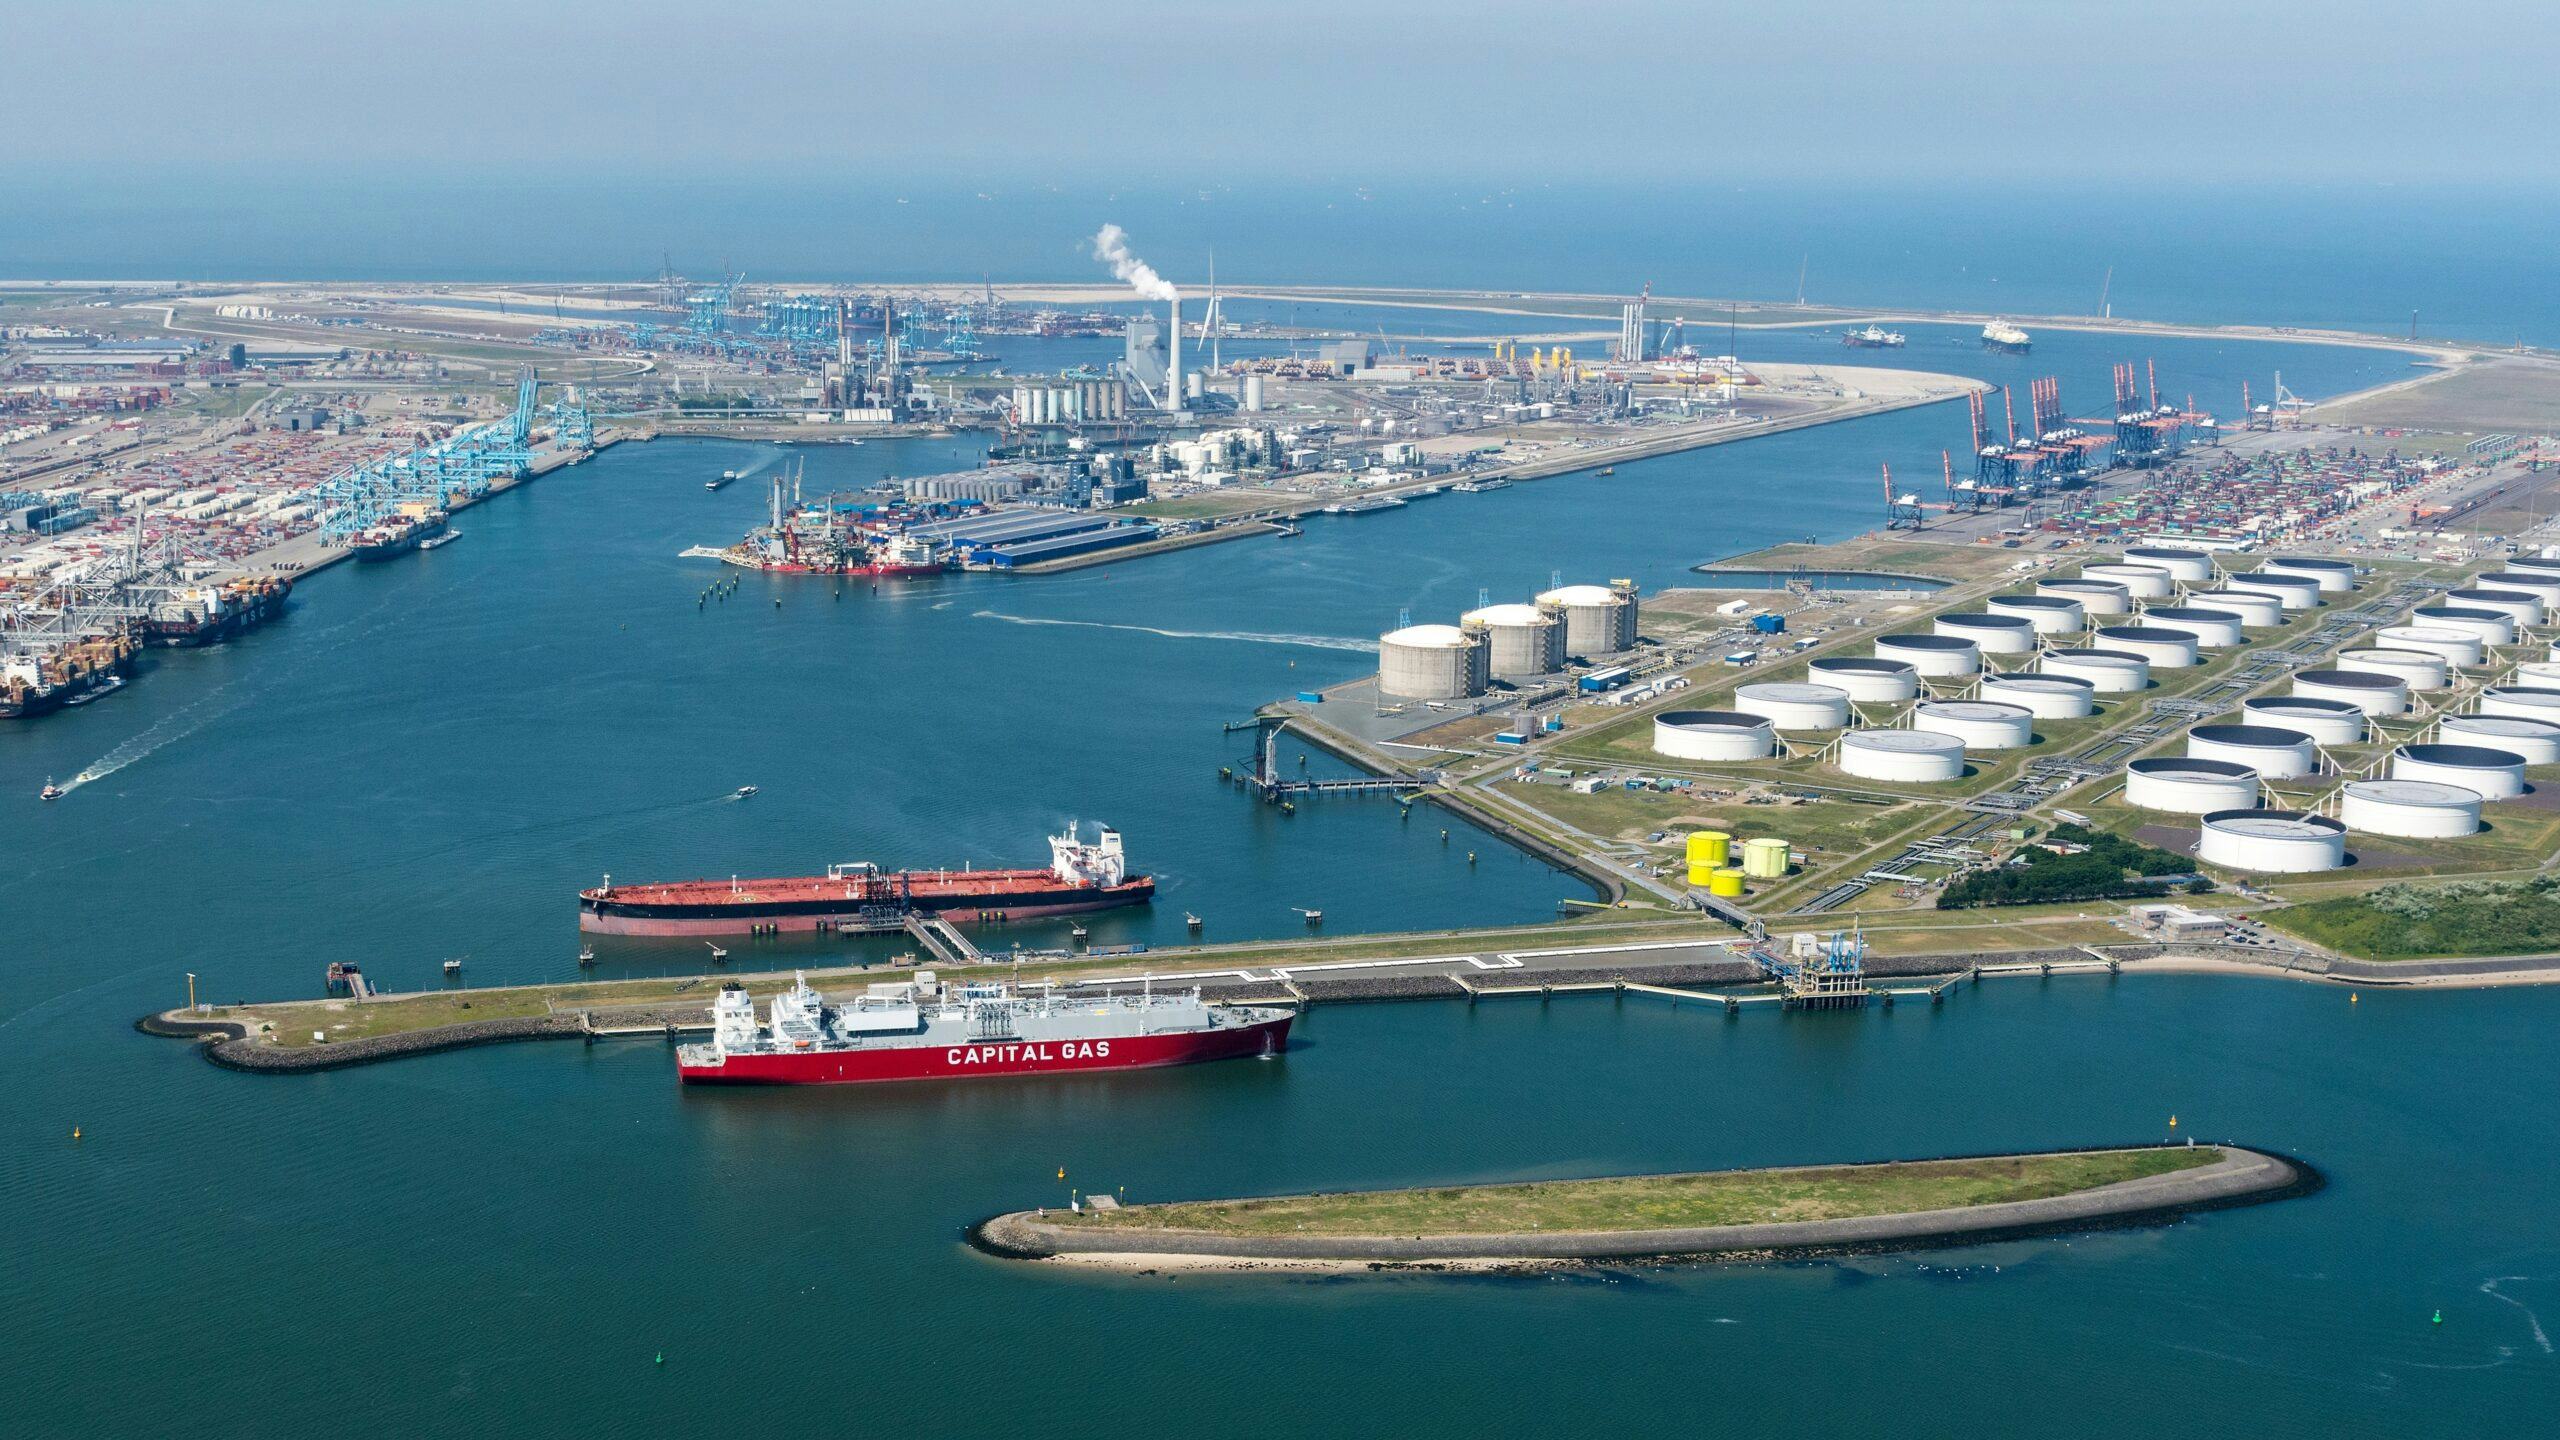 Ammoniakkraker Rotterdam moet grote waterstofimport mogelijk maken